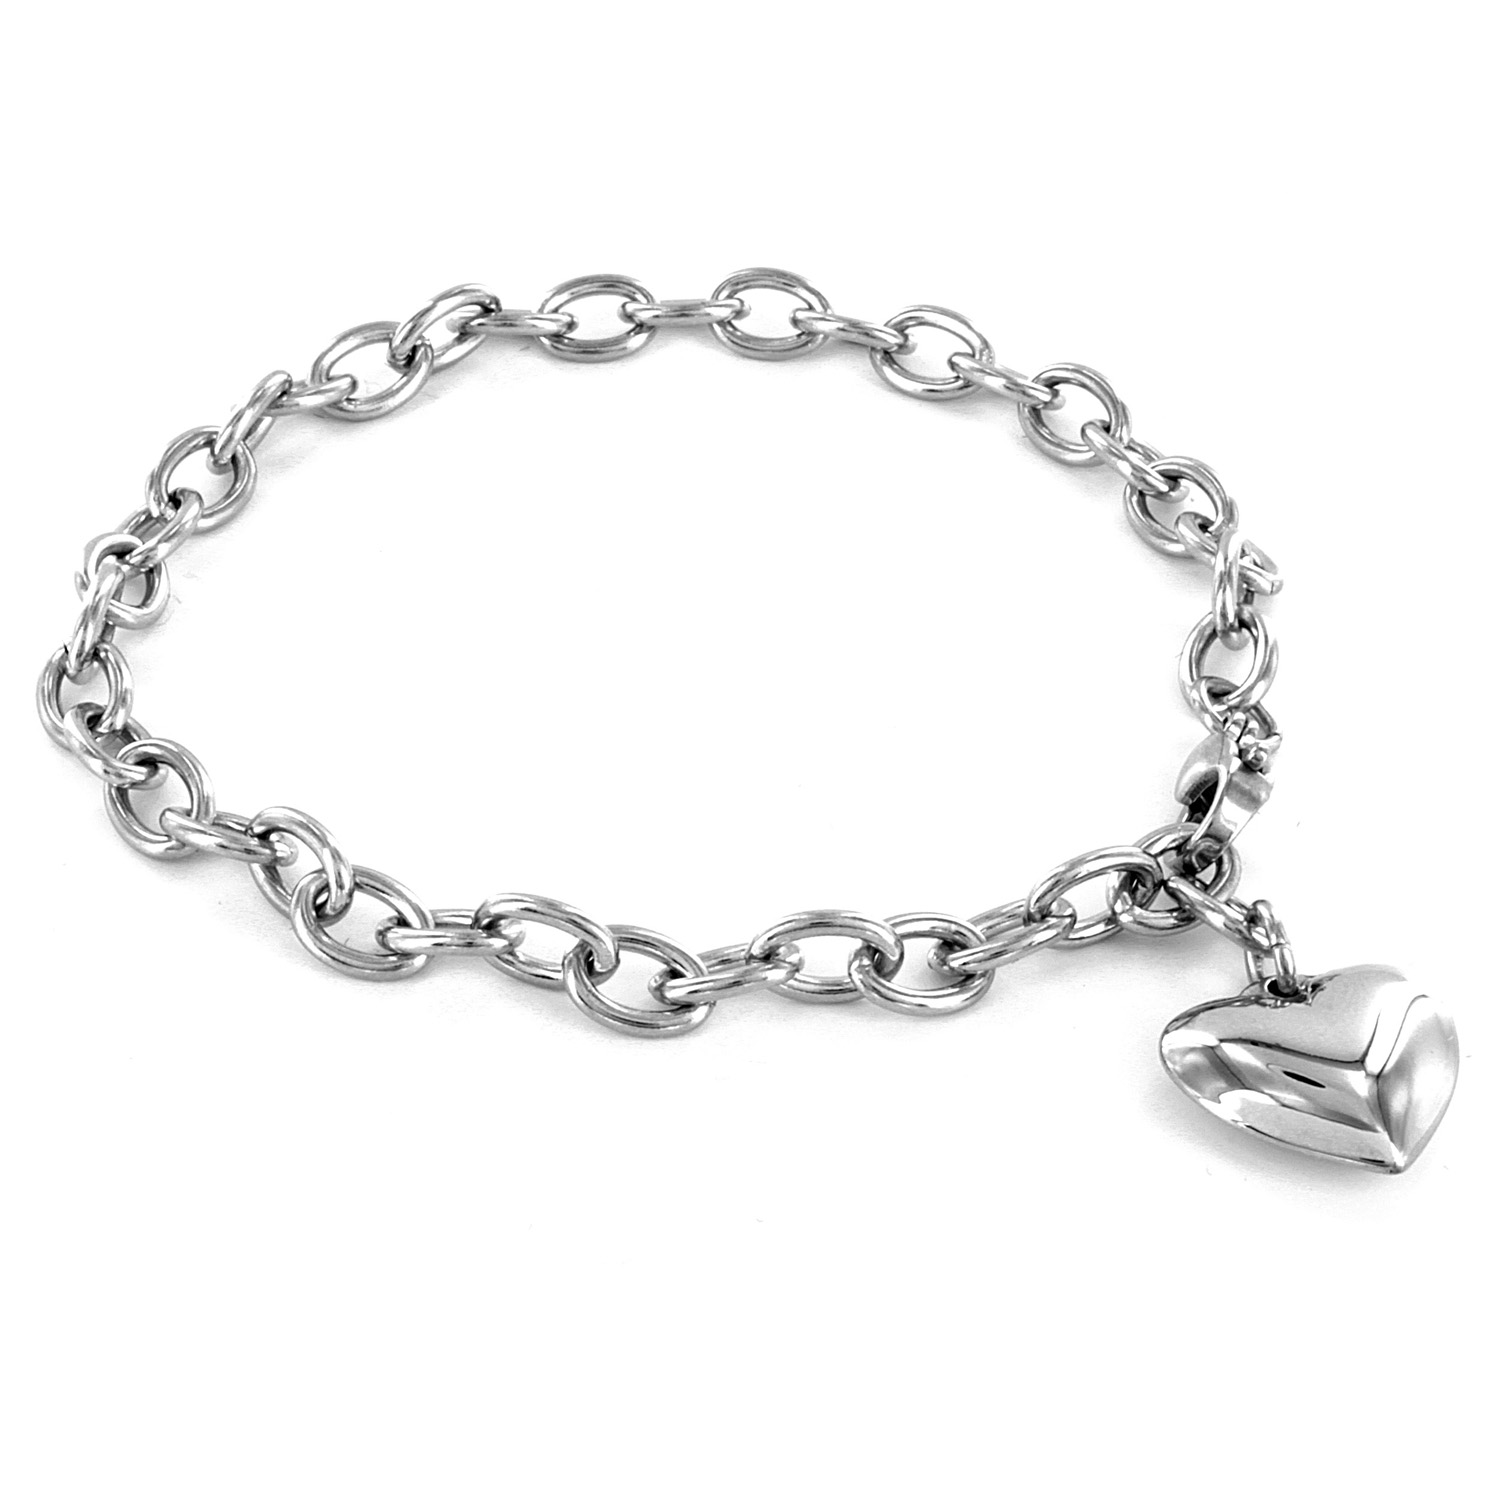 Stainless Steel Heart Charm Bracelet